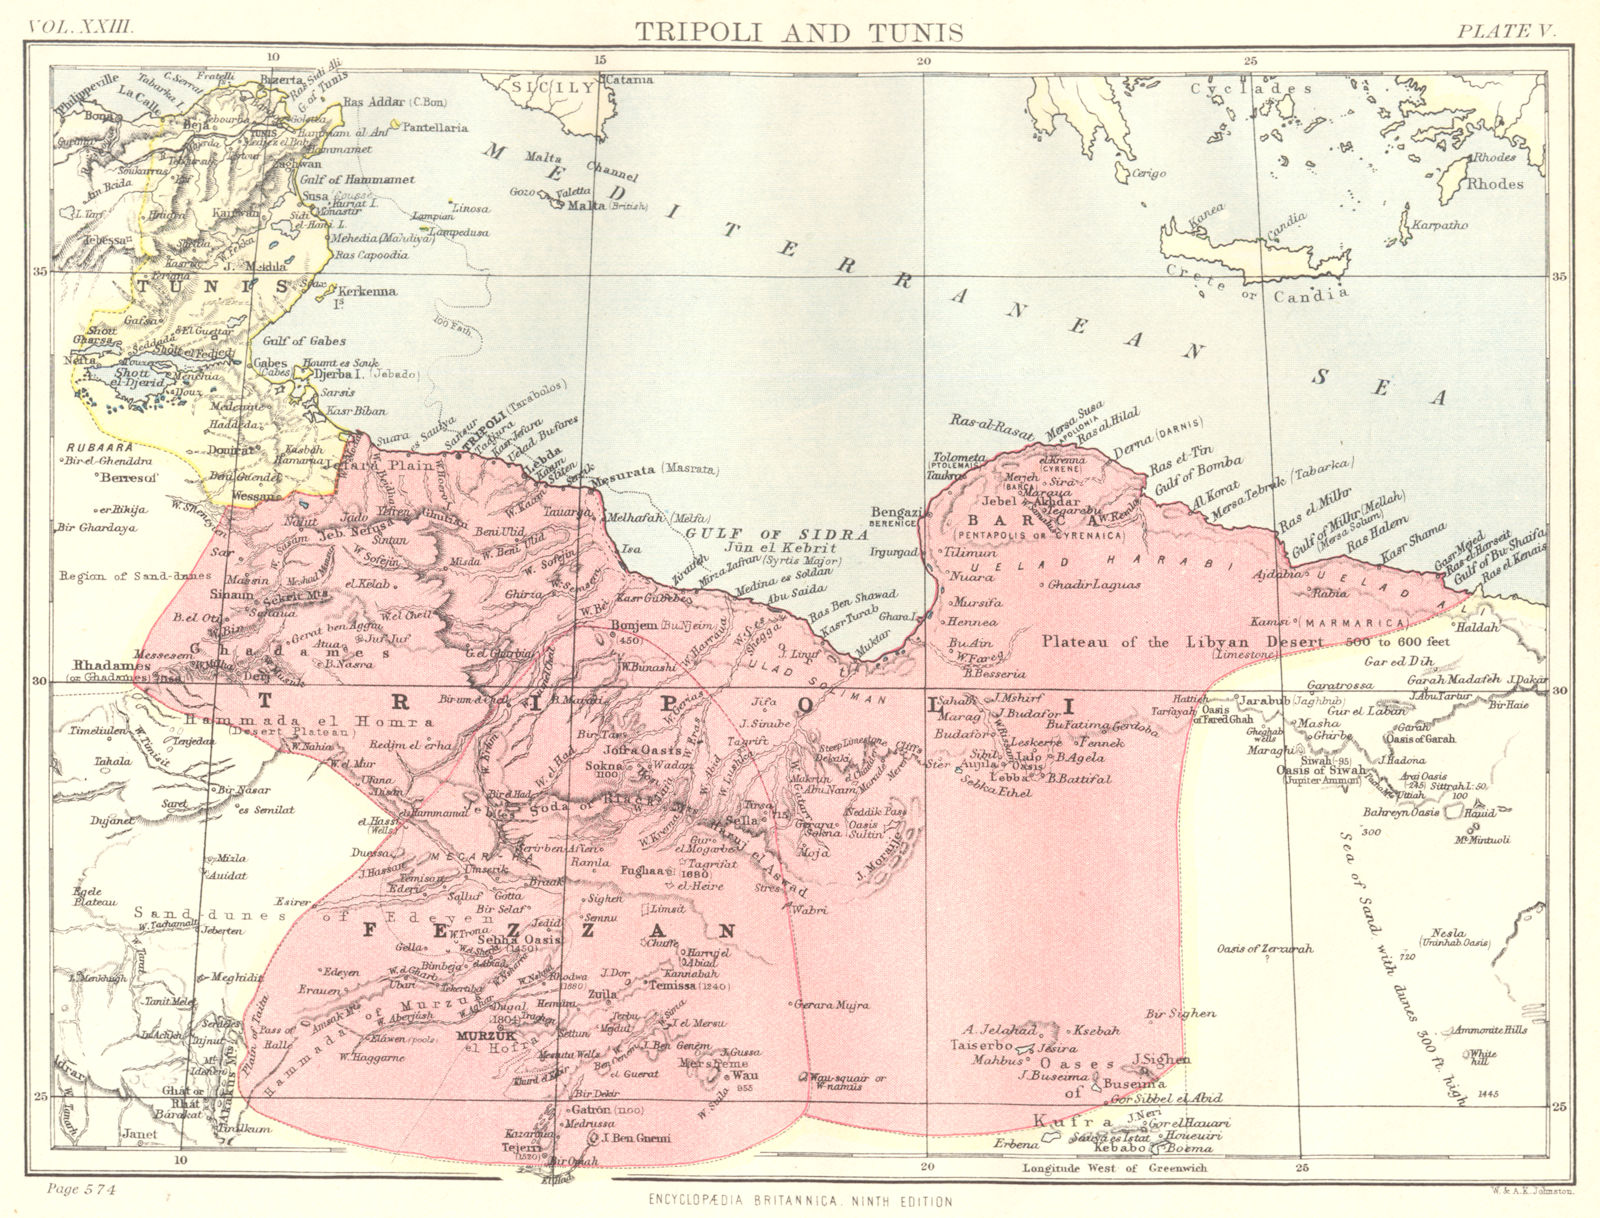 LIBYA TUNISIA. Tripoli and Tunis. Britannica 9th edition 1898 old antique map